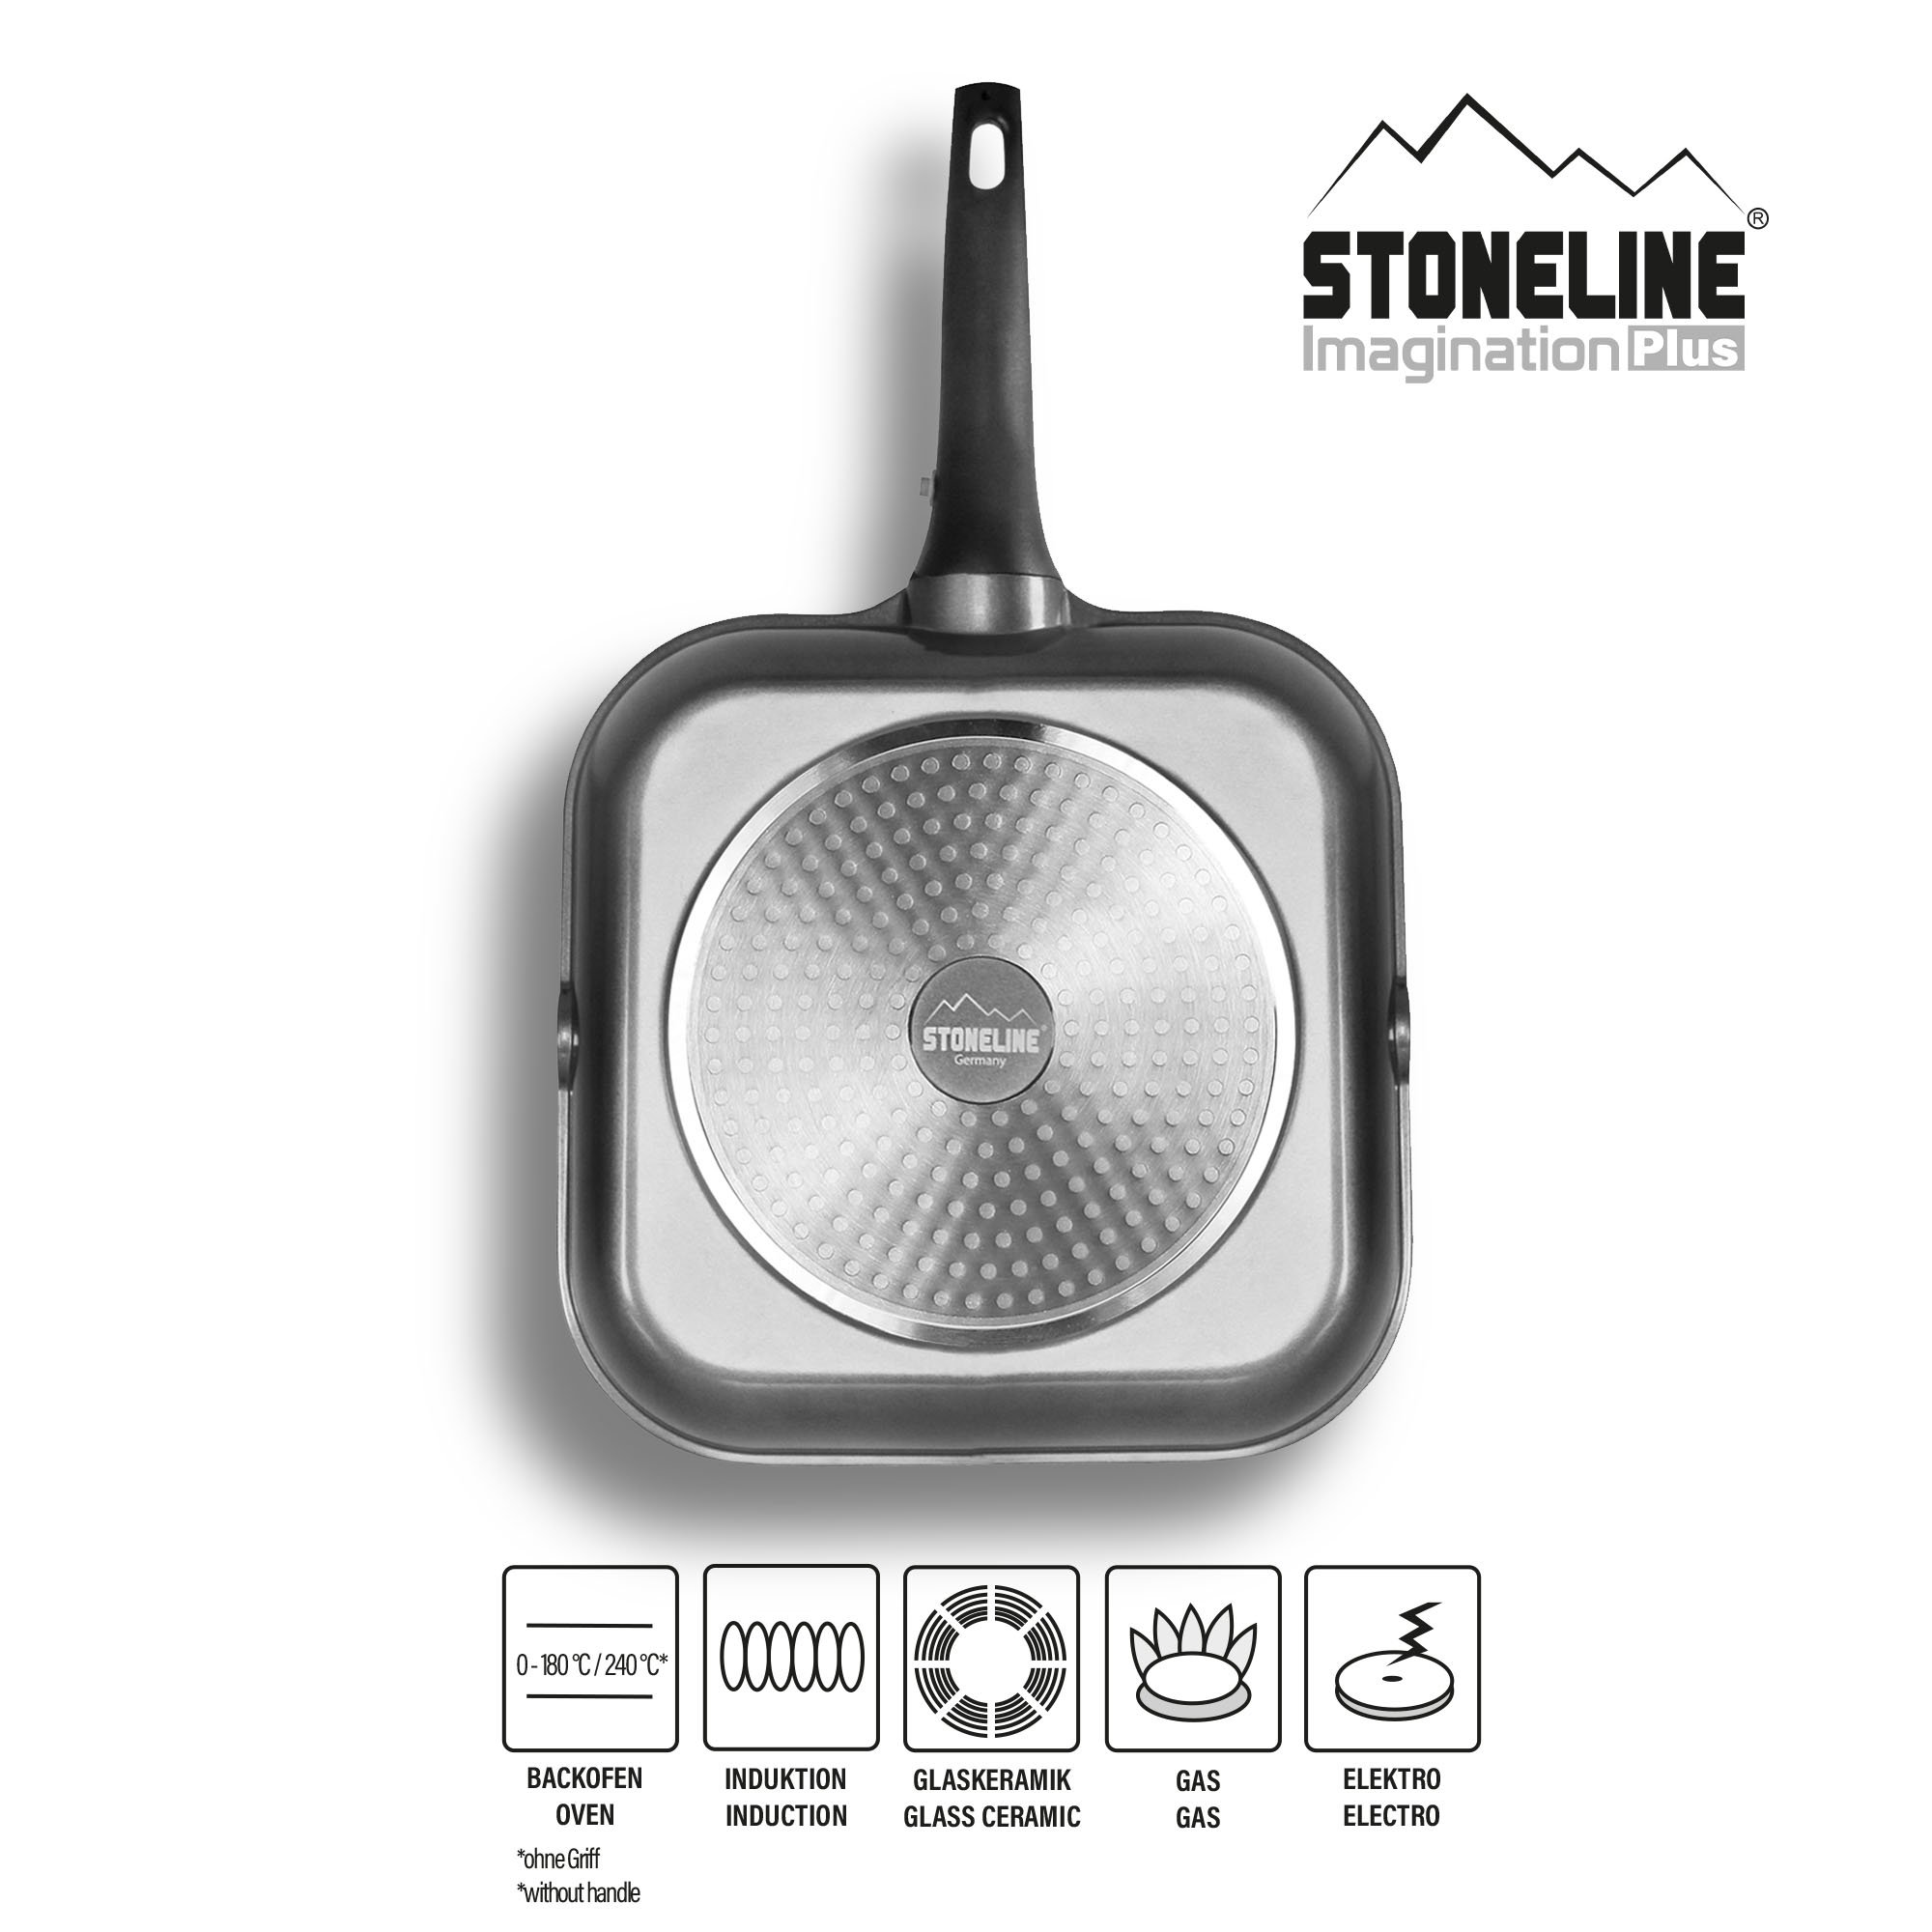 STONELINE® Griddle Pan 28 cm, Removable Handle, Spouts, Non-Stick | Imagination PLUS